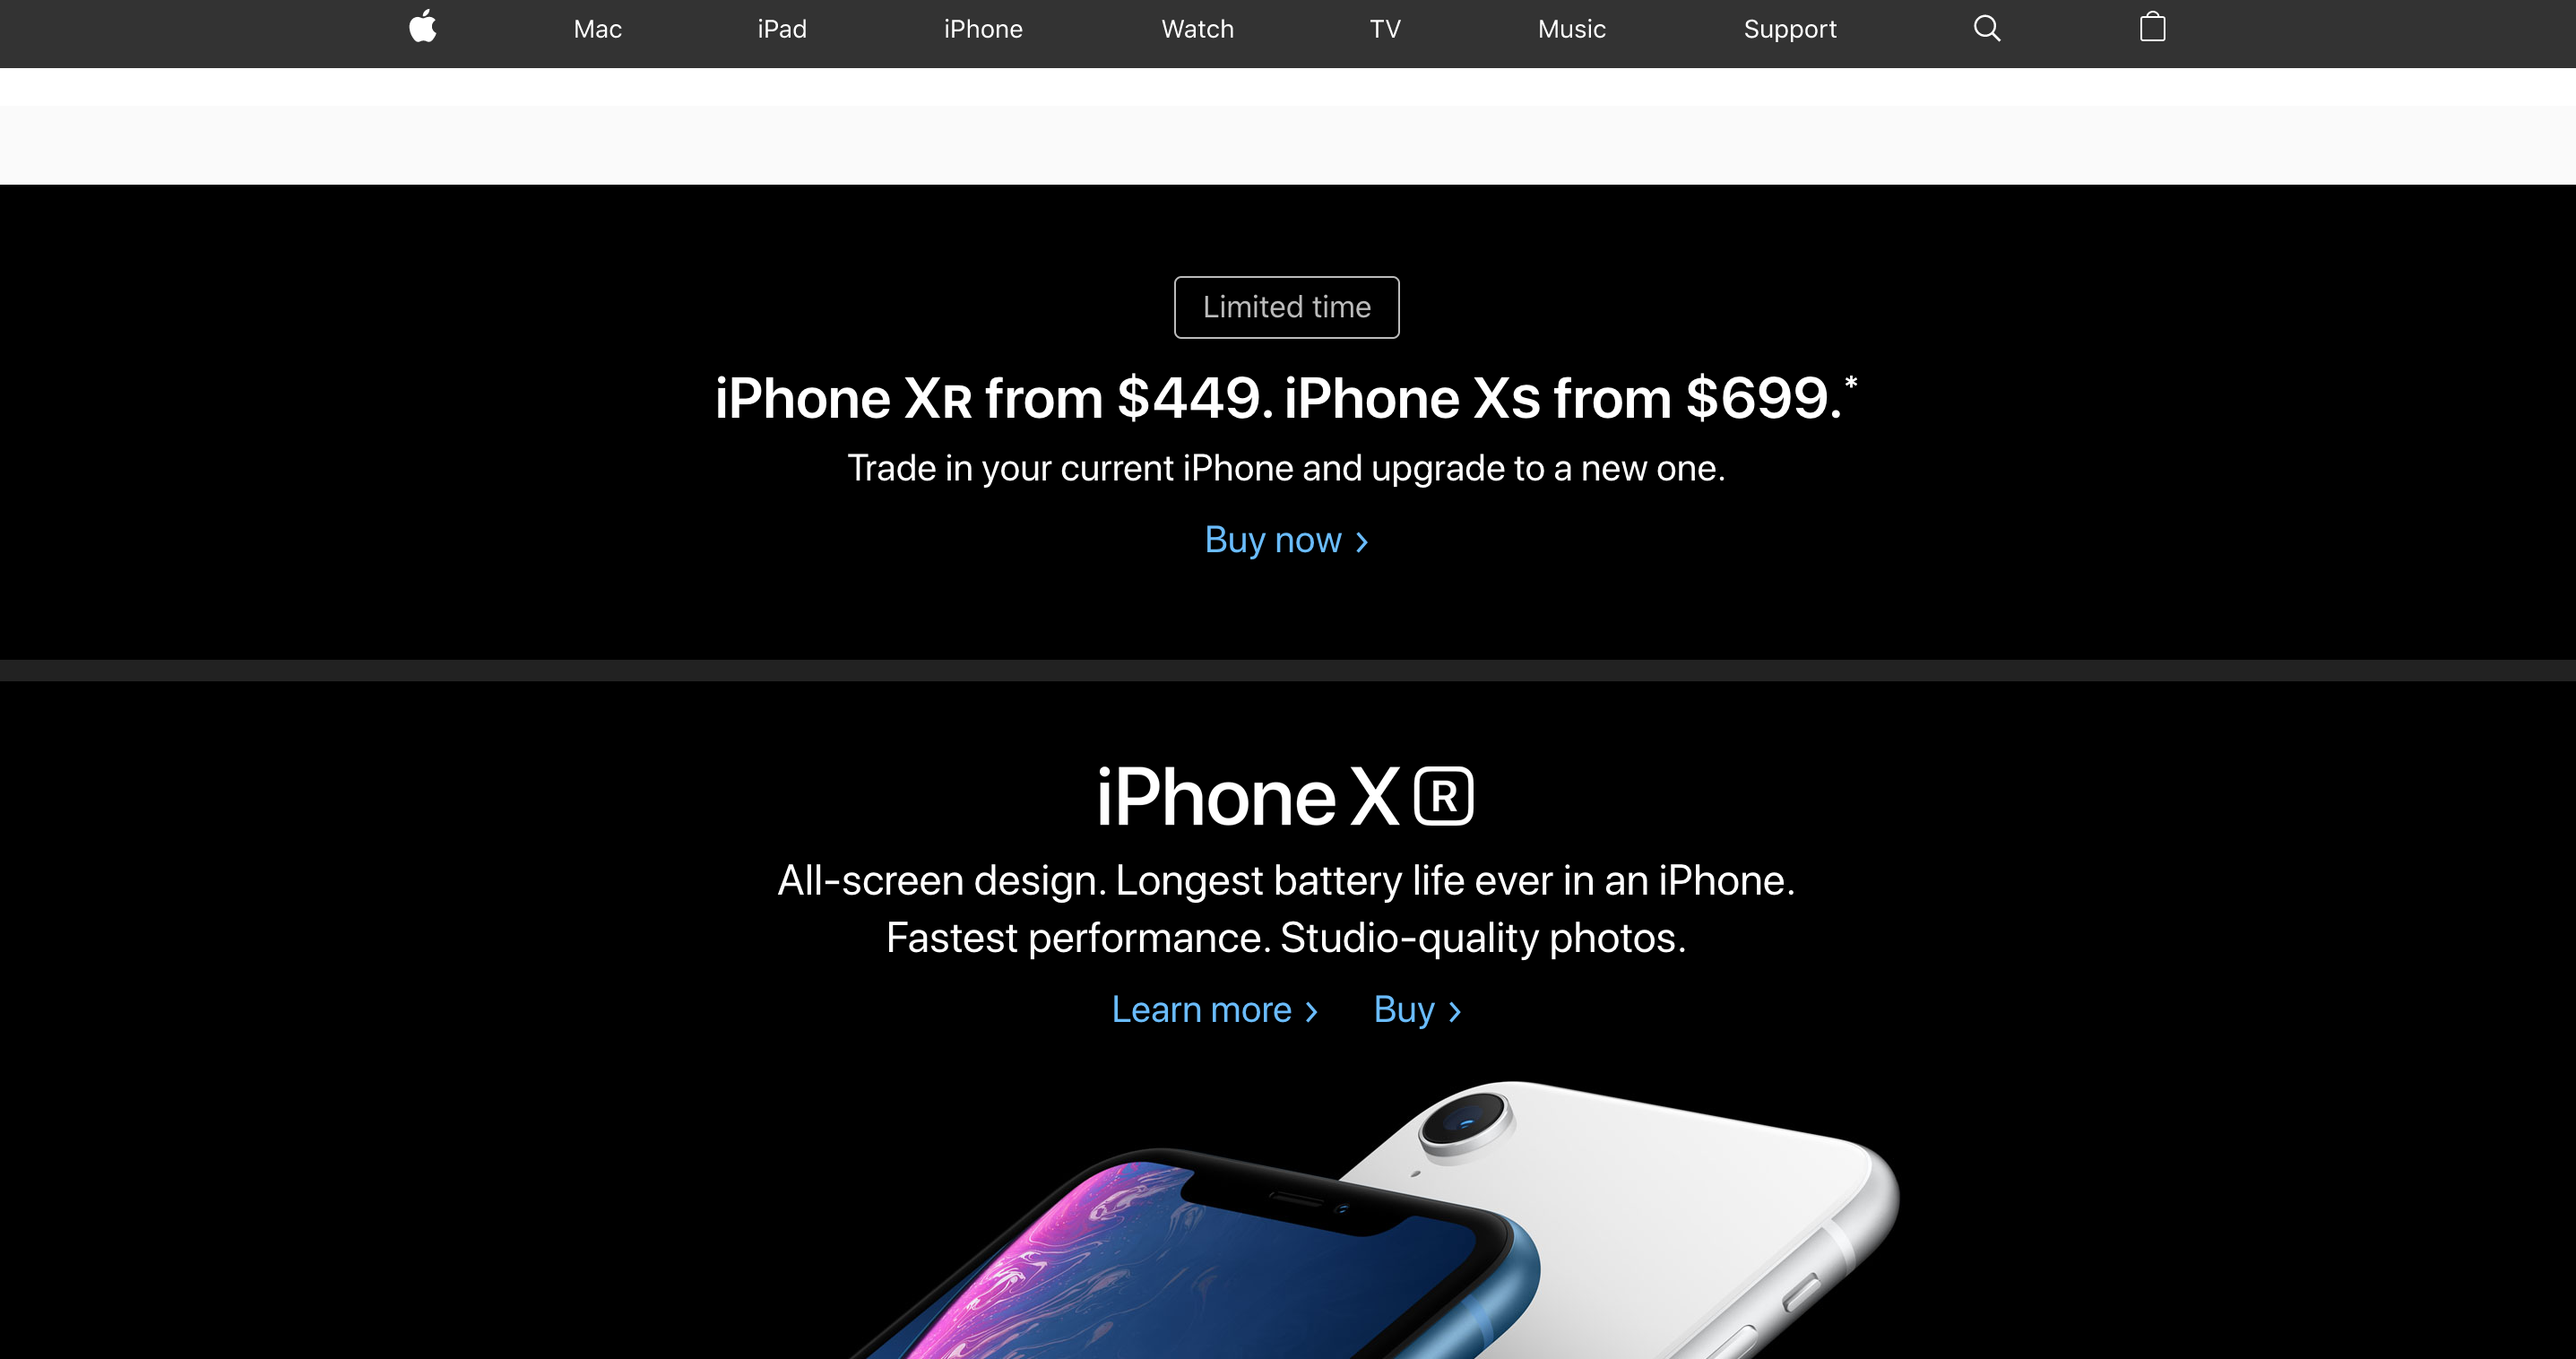 Website Design for apple.com in 2019